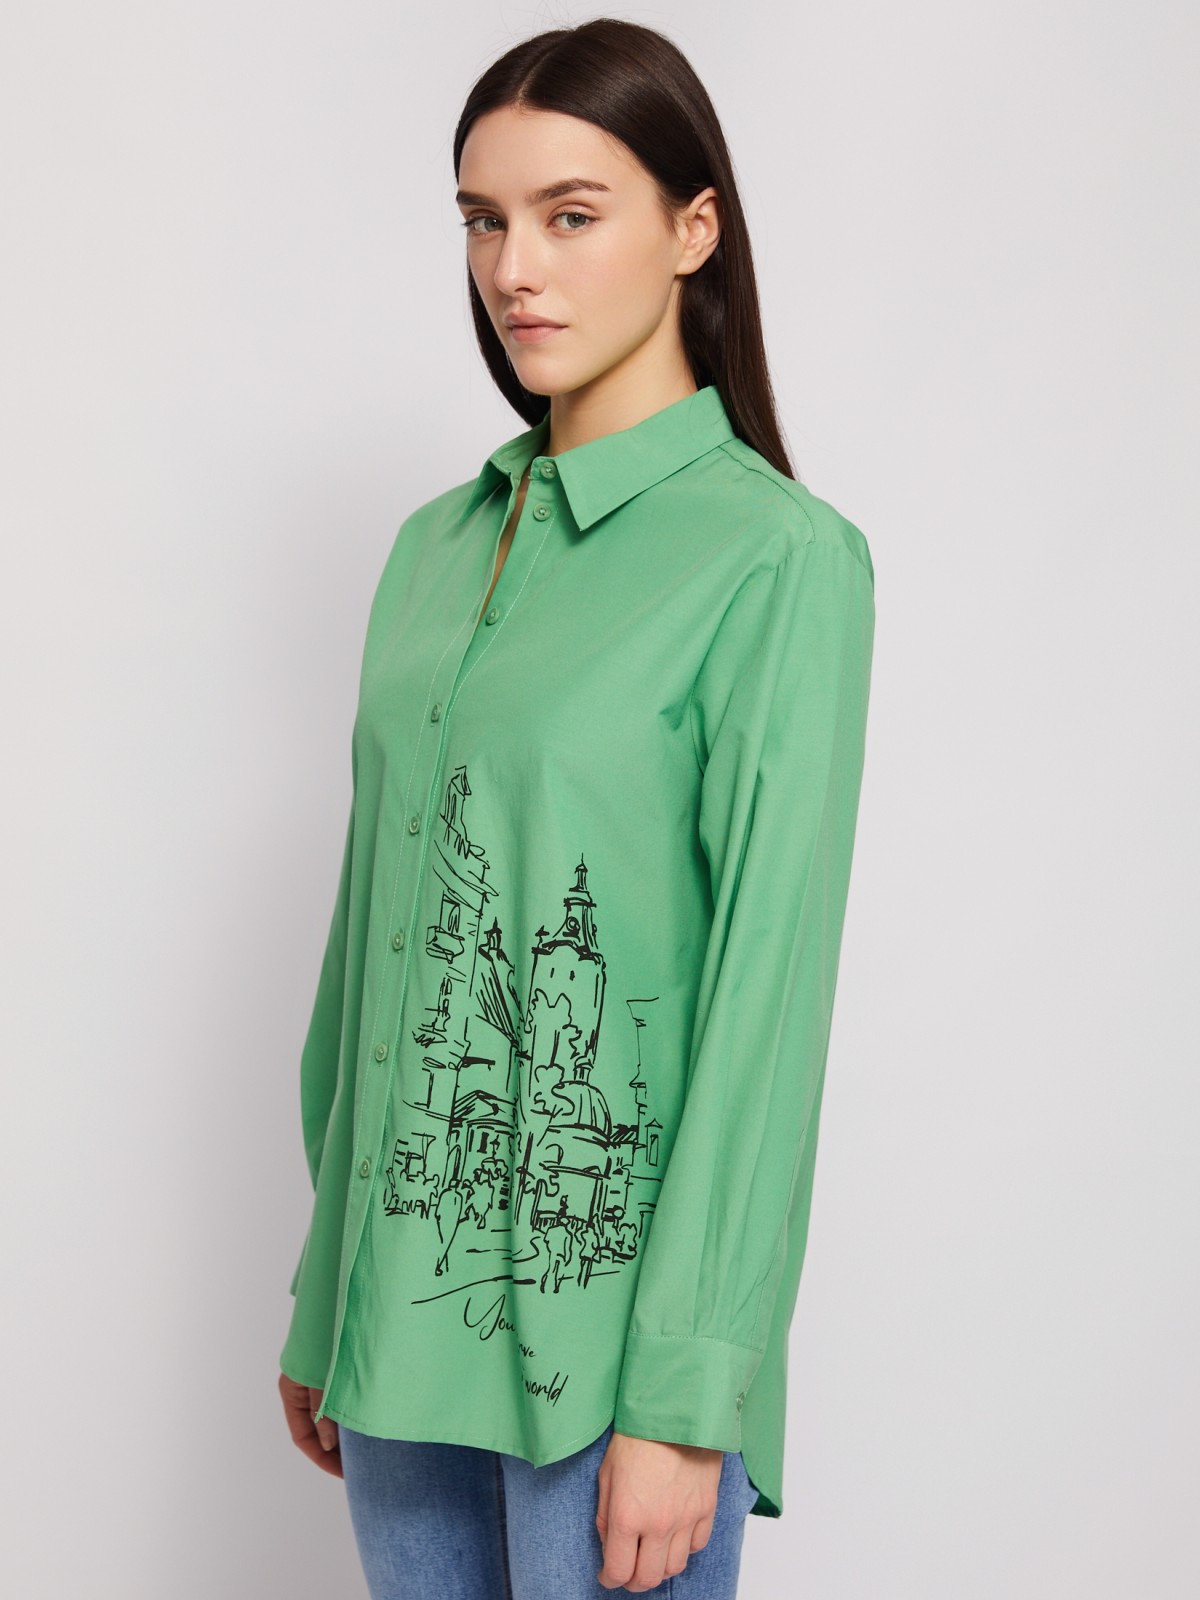 Рубашка прямого фасона с принтом zolla 024221159313, цвет зеленый, размер M - фото 3